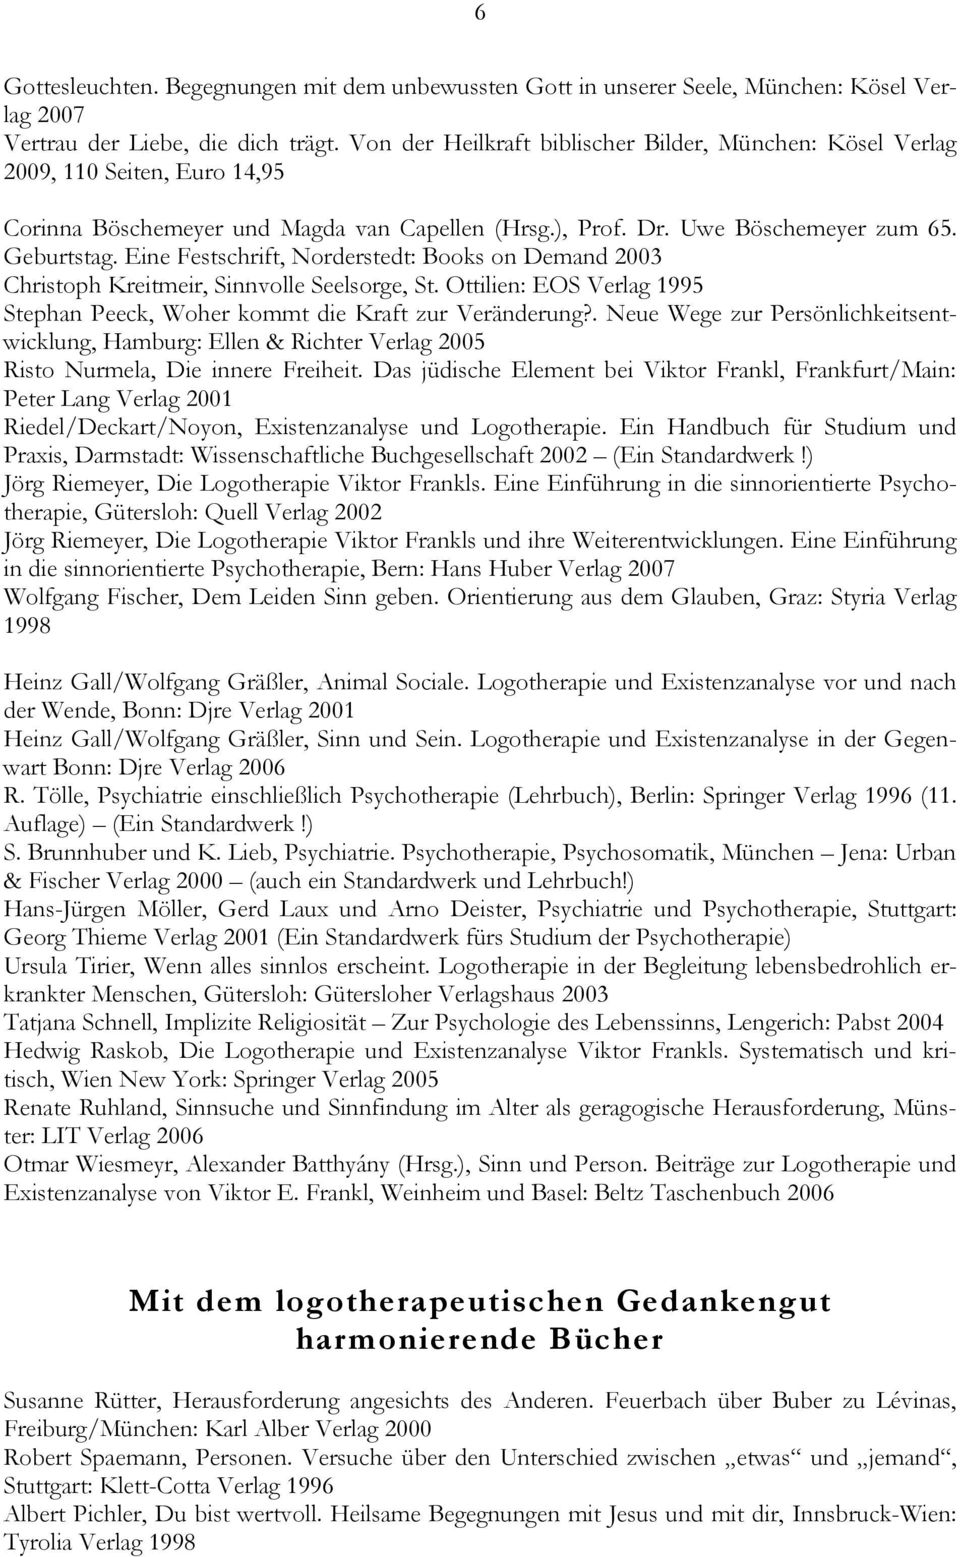 Eine Festschrift, Norderstedt: Books on Demand 2003 Christoph Kreitmeir, Sinnvolle Seelsorge, St. Ottilien: EOS Verlag 1995 Stephan Peeck, Woher kommt die Kraft zur Veränderung?